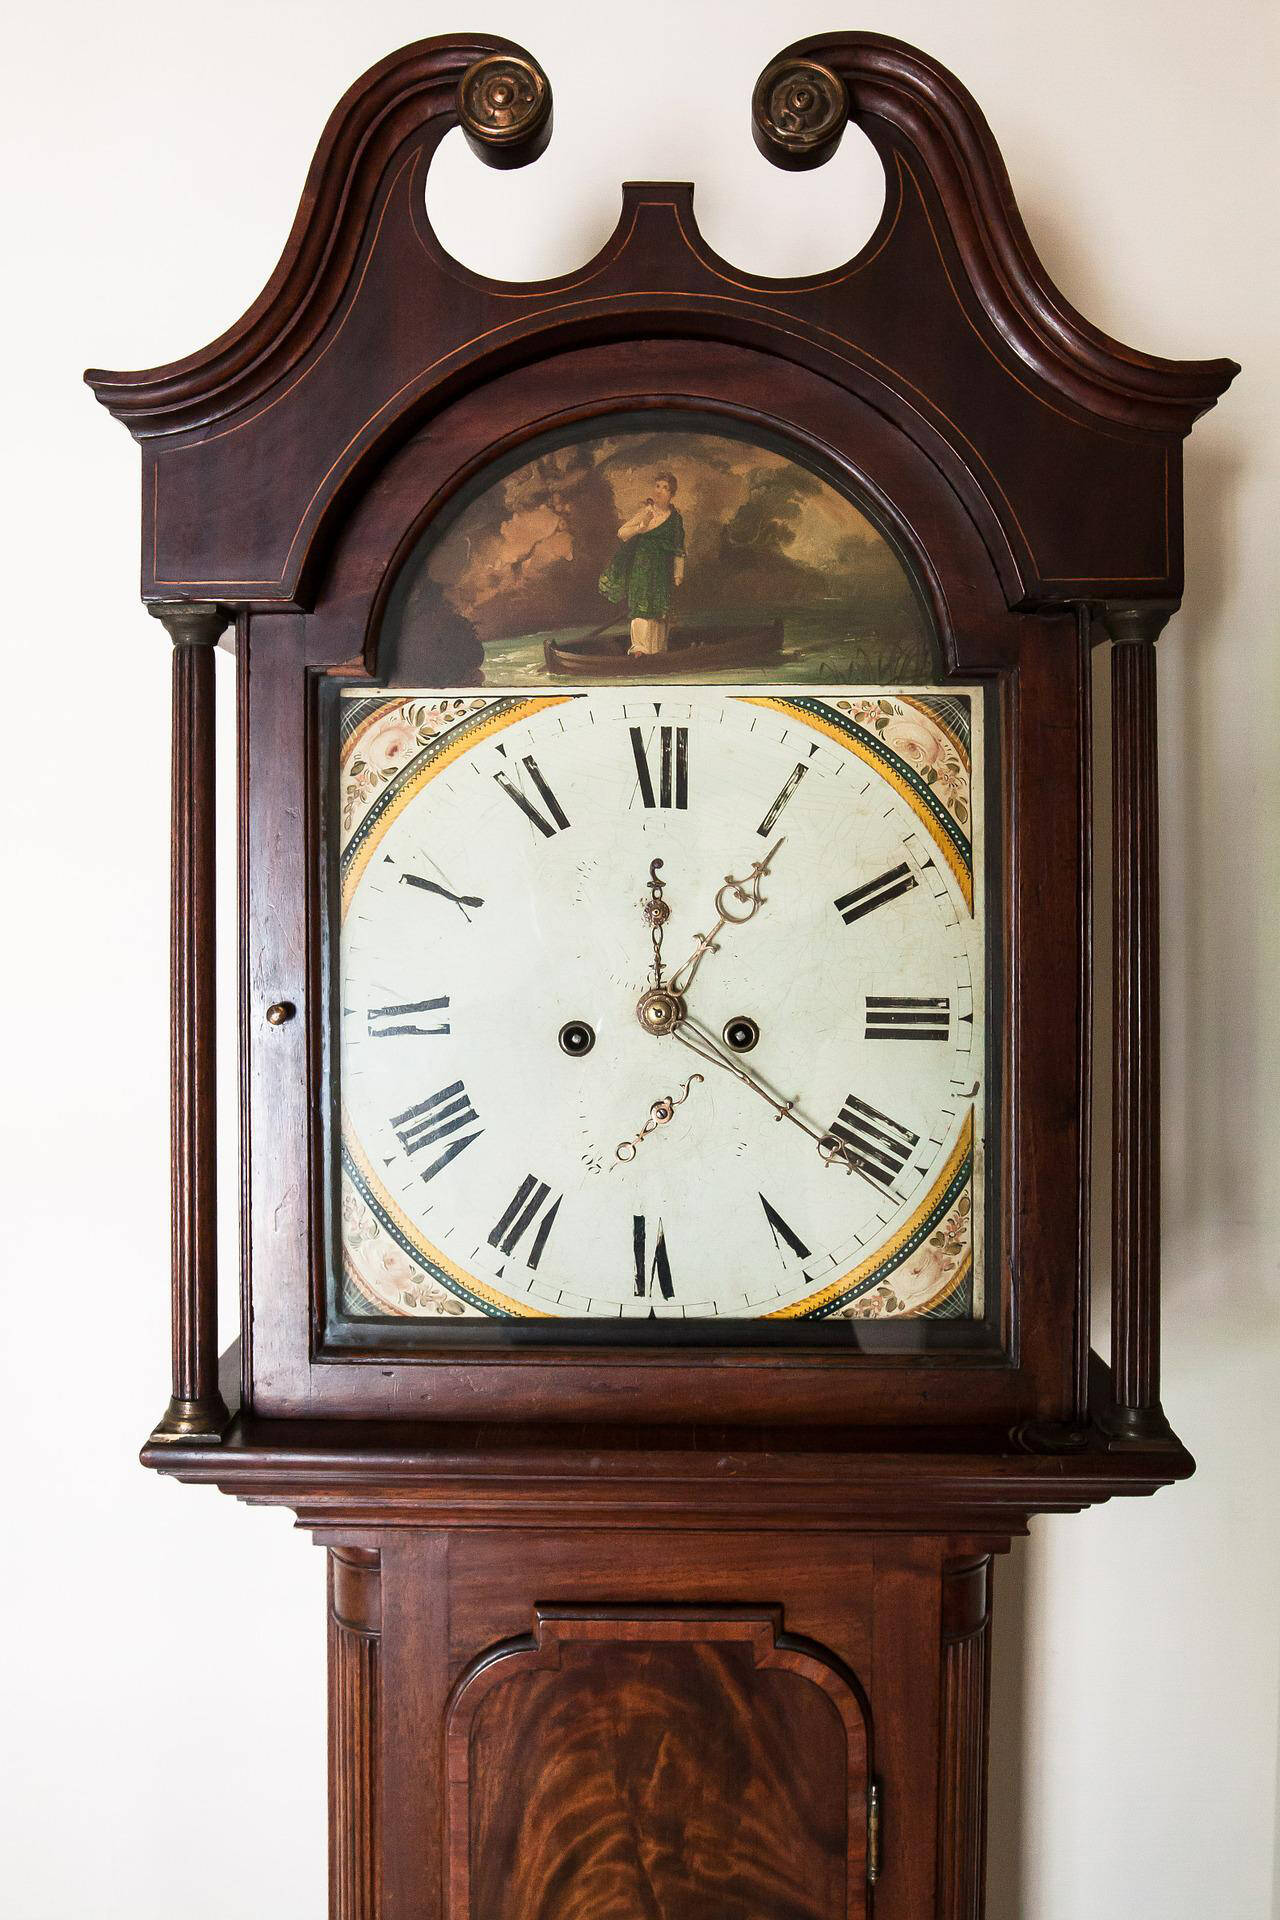 Do you know where the grandfather clock originated? (Pixabay.com)